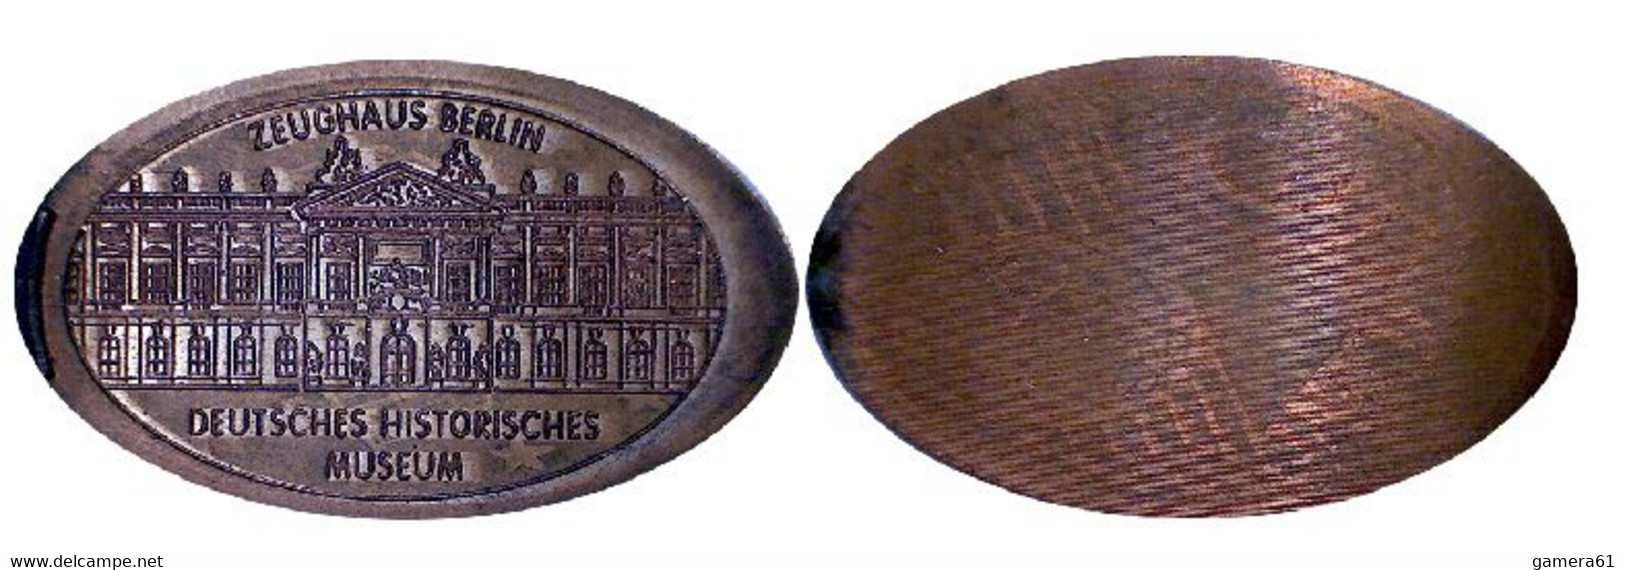 04501 GETTONE TOKEN JETON FICHA ZEUGHAUS-BERLIN DEUTESCHES HISTORISCHES MUSEUM - Souvenir-Medaille (elongated Coins)